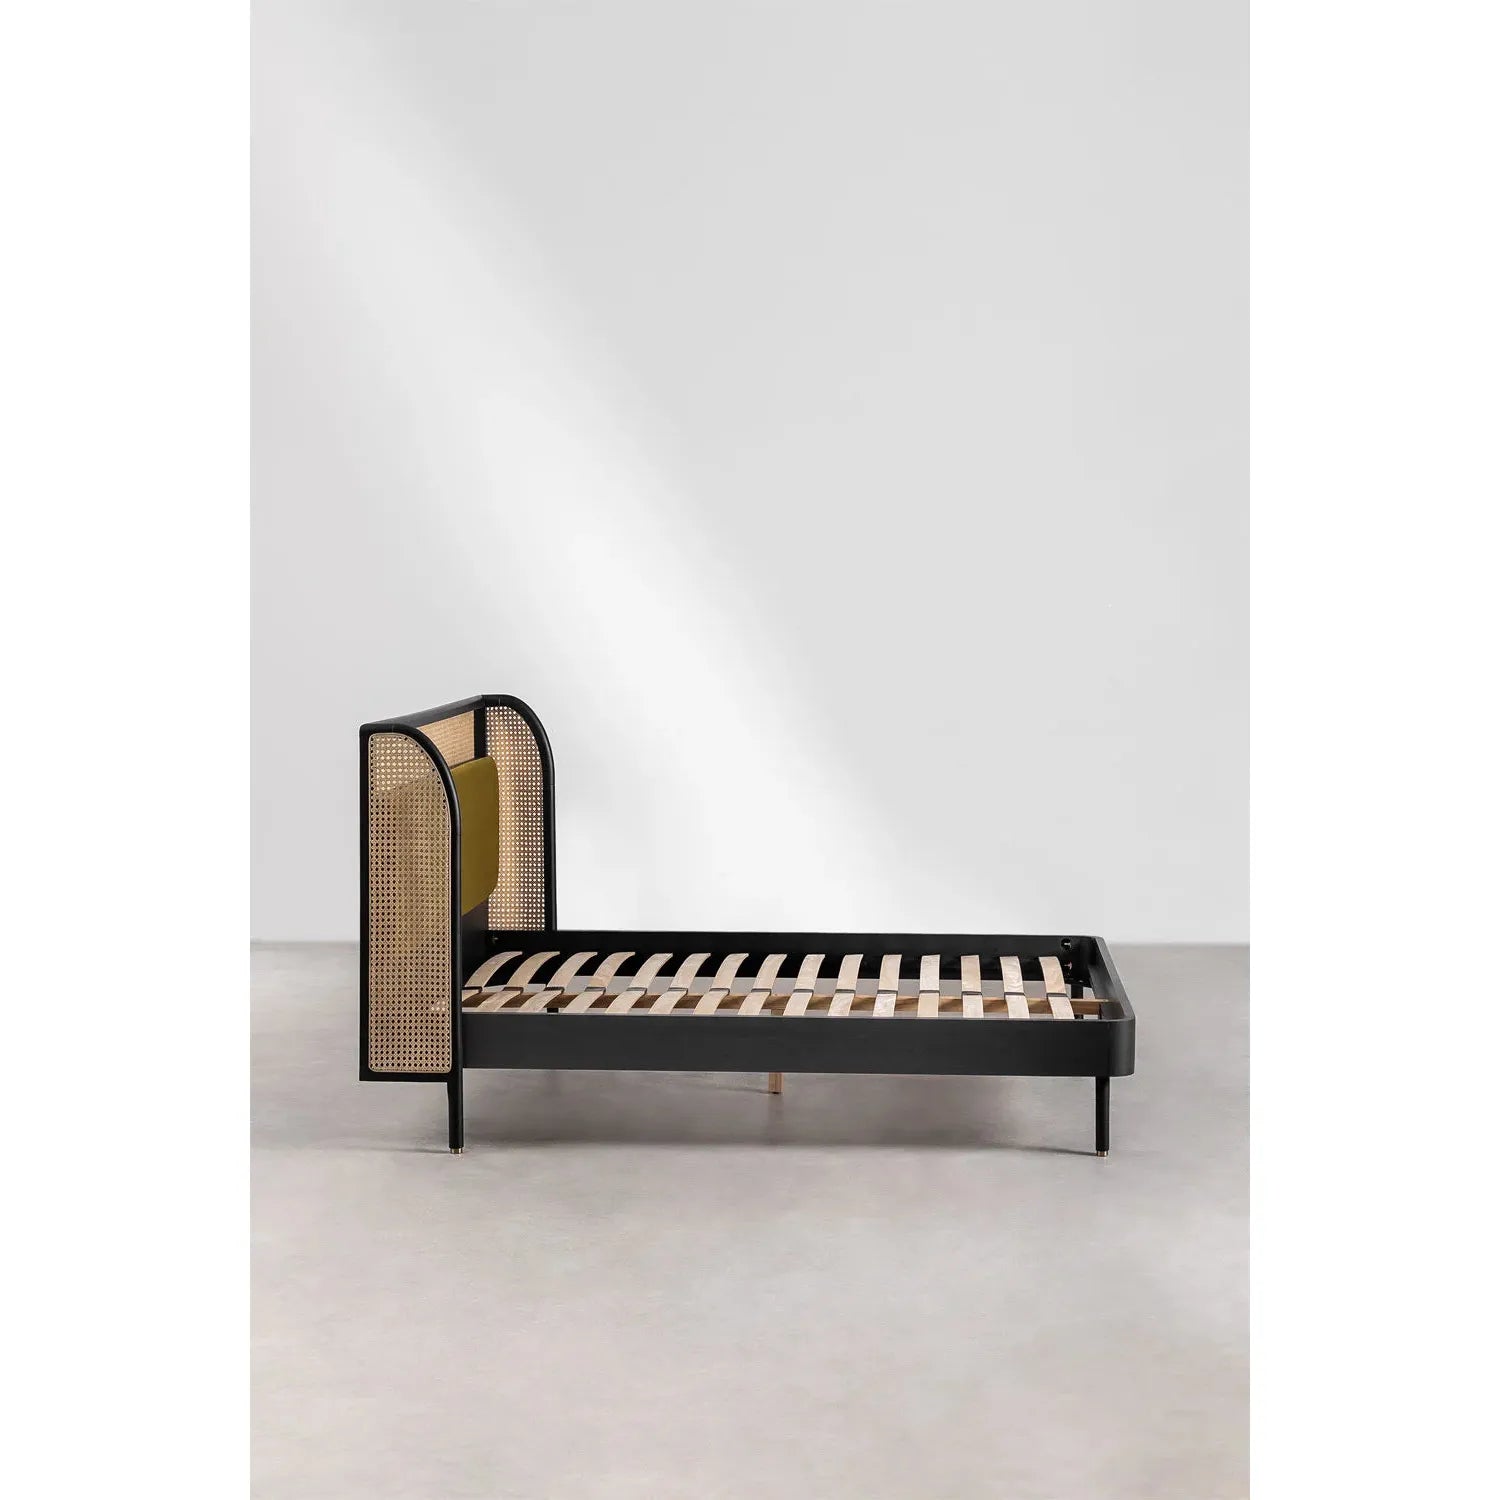 Tamiara medinė lova, juoda spalva, 160 x 200